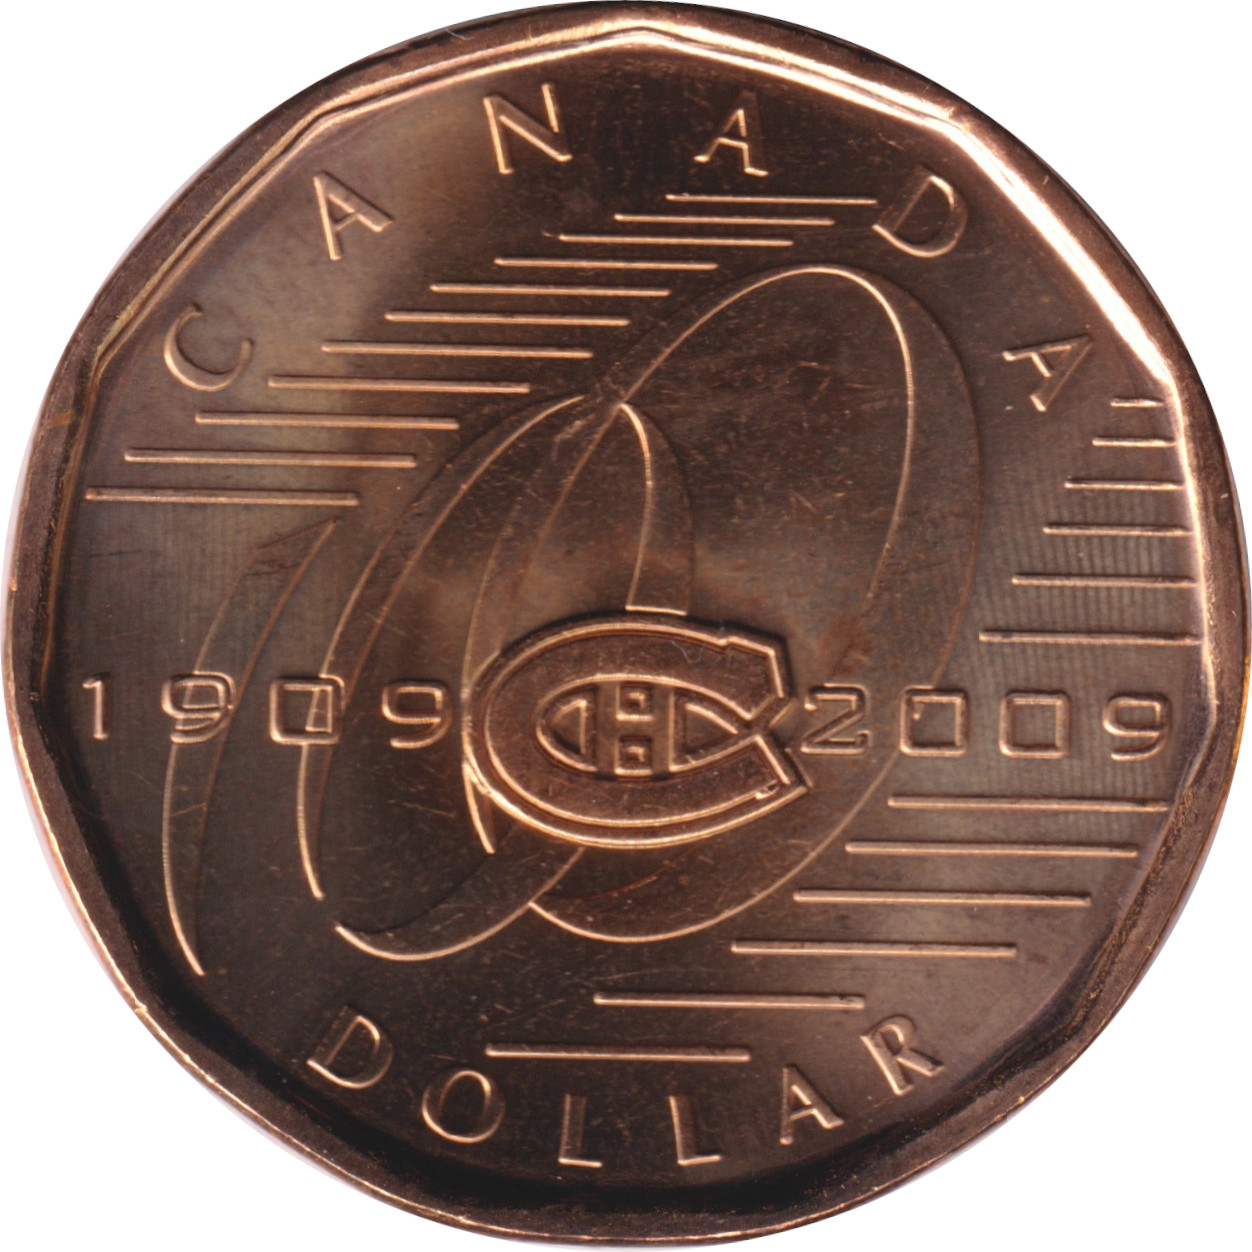 1 dollar - Canadiens de Montréal - 100 years